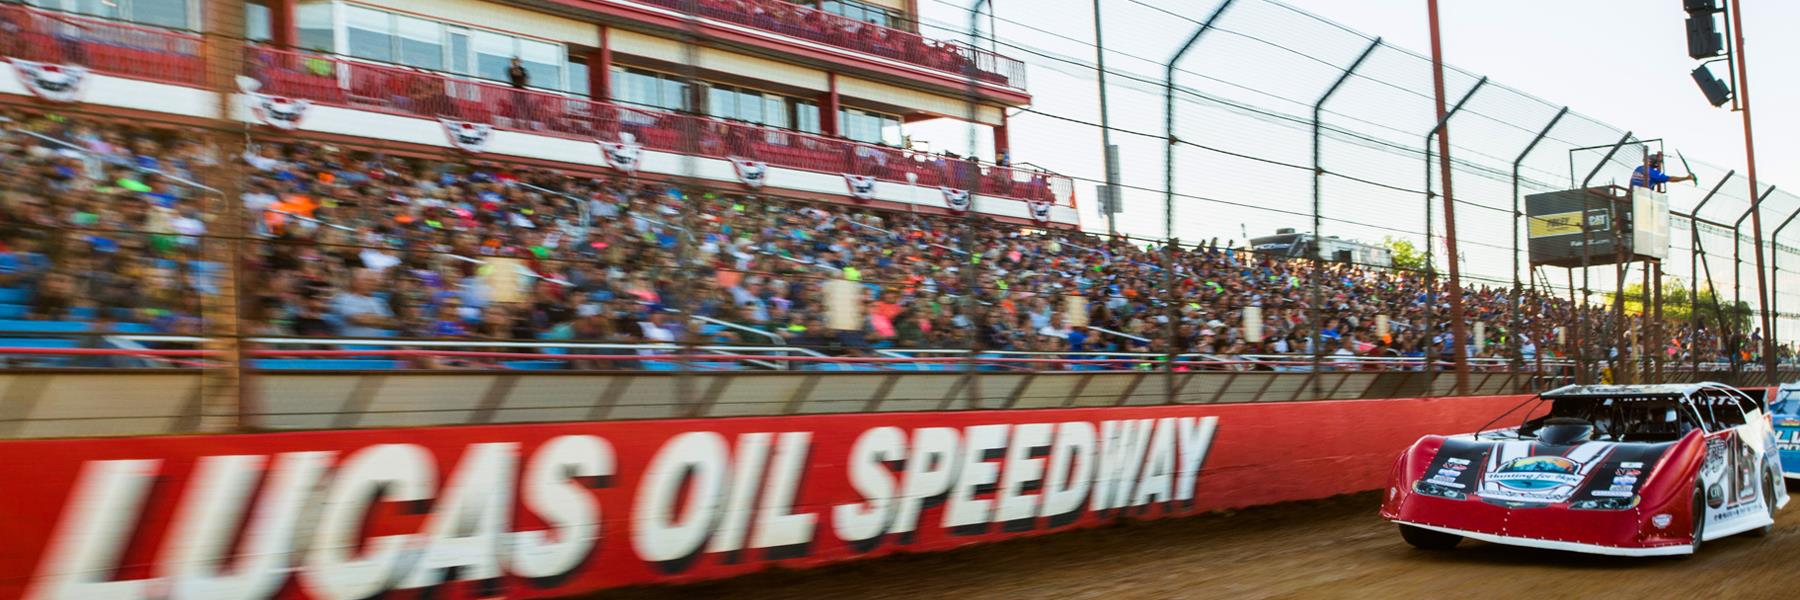 9/19/2020 - Lucas Oil Speedway